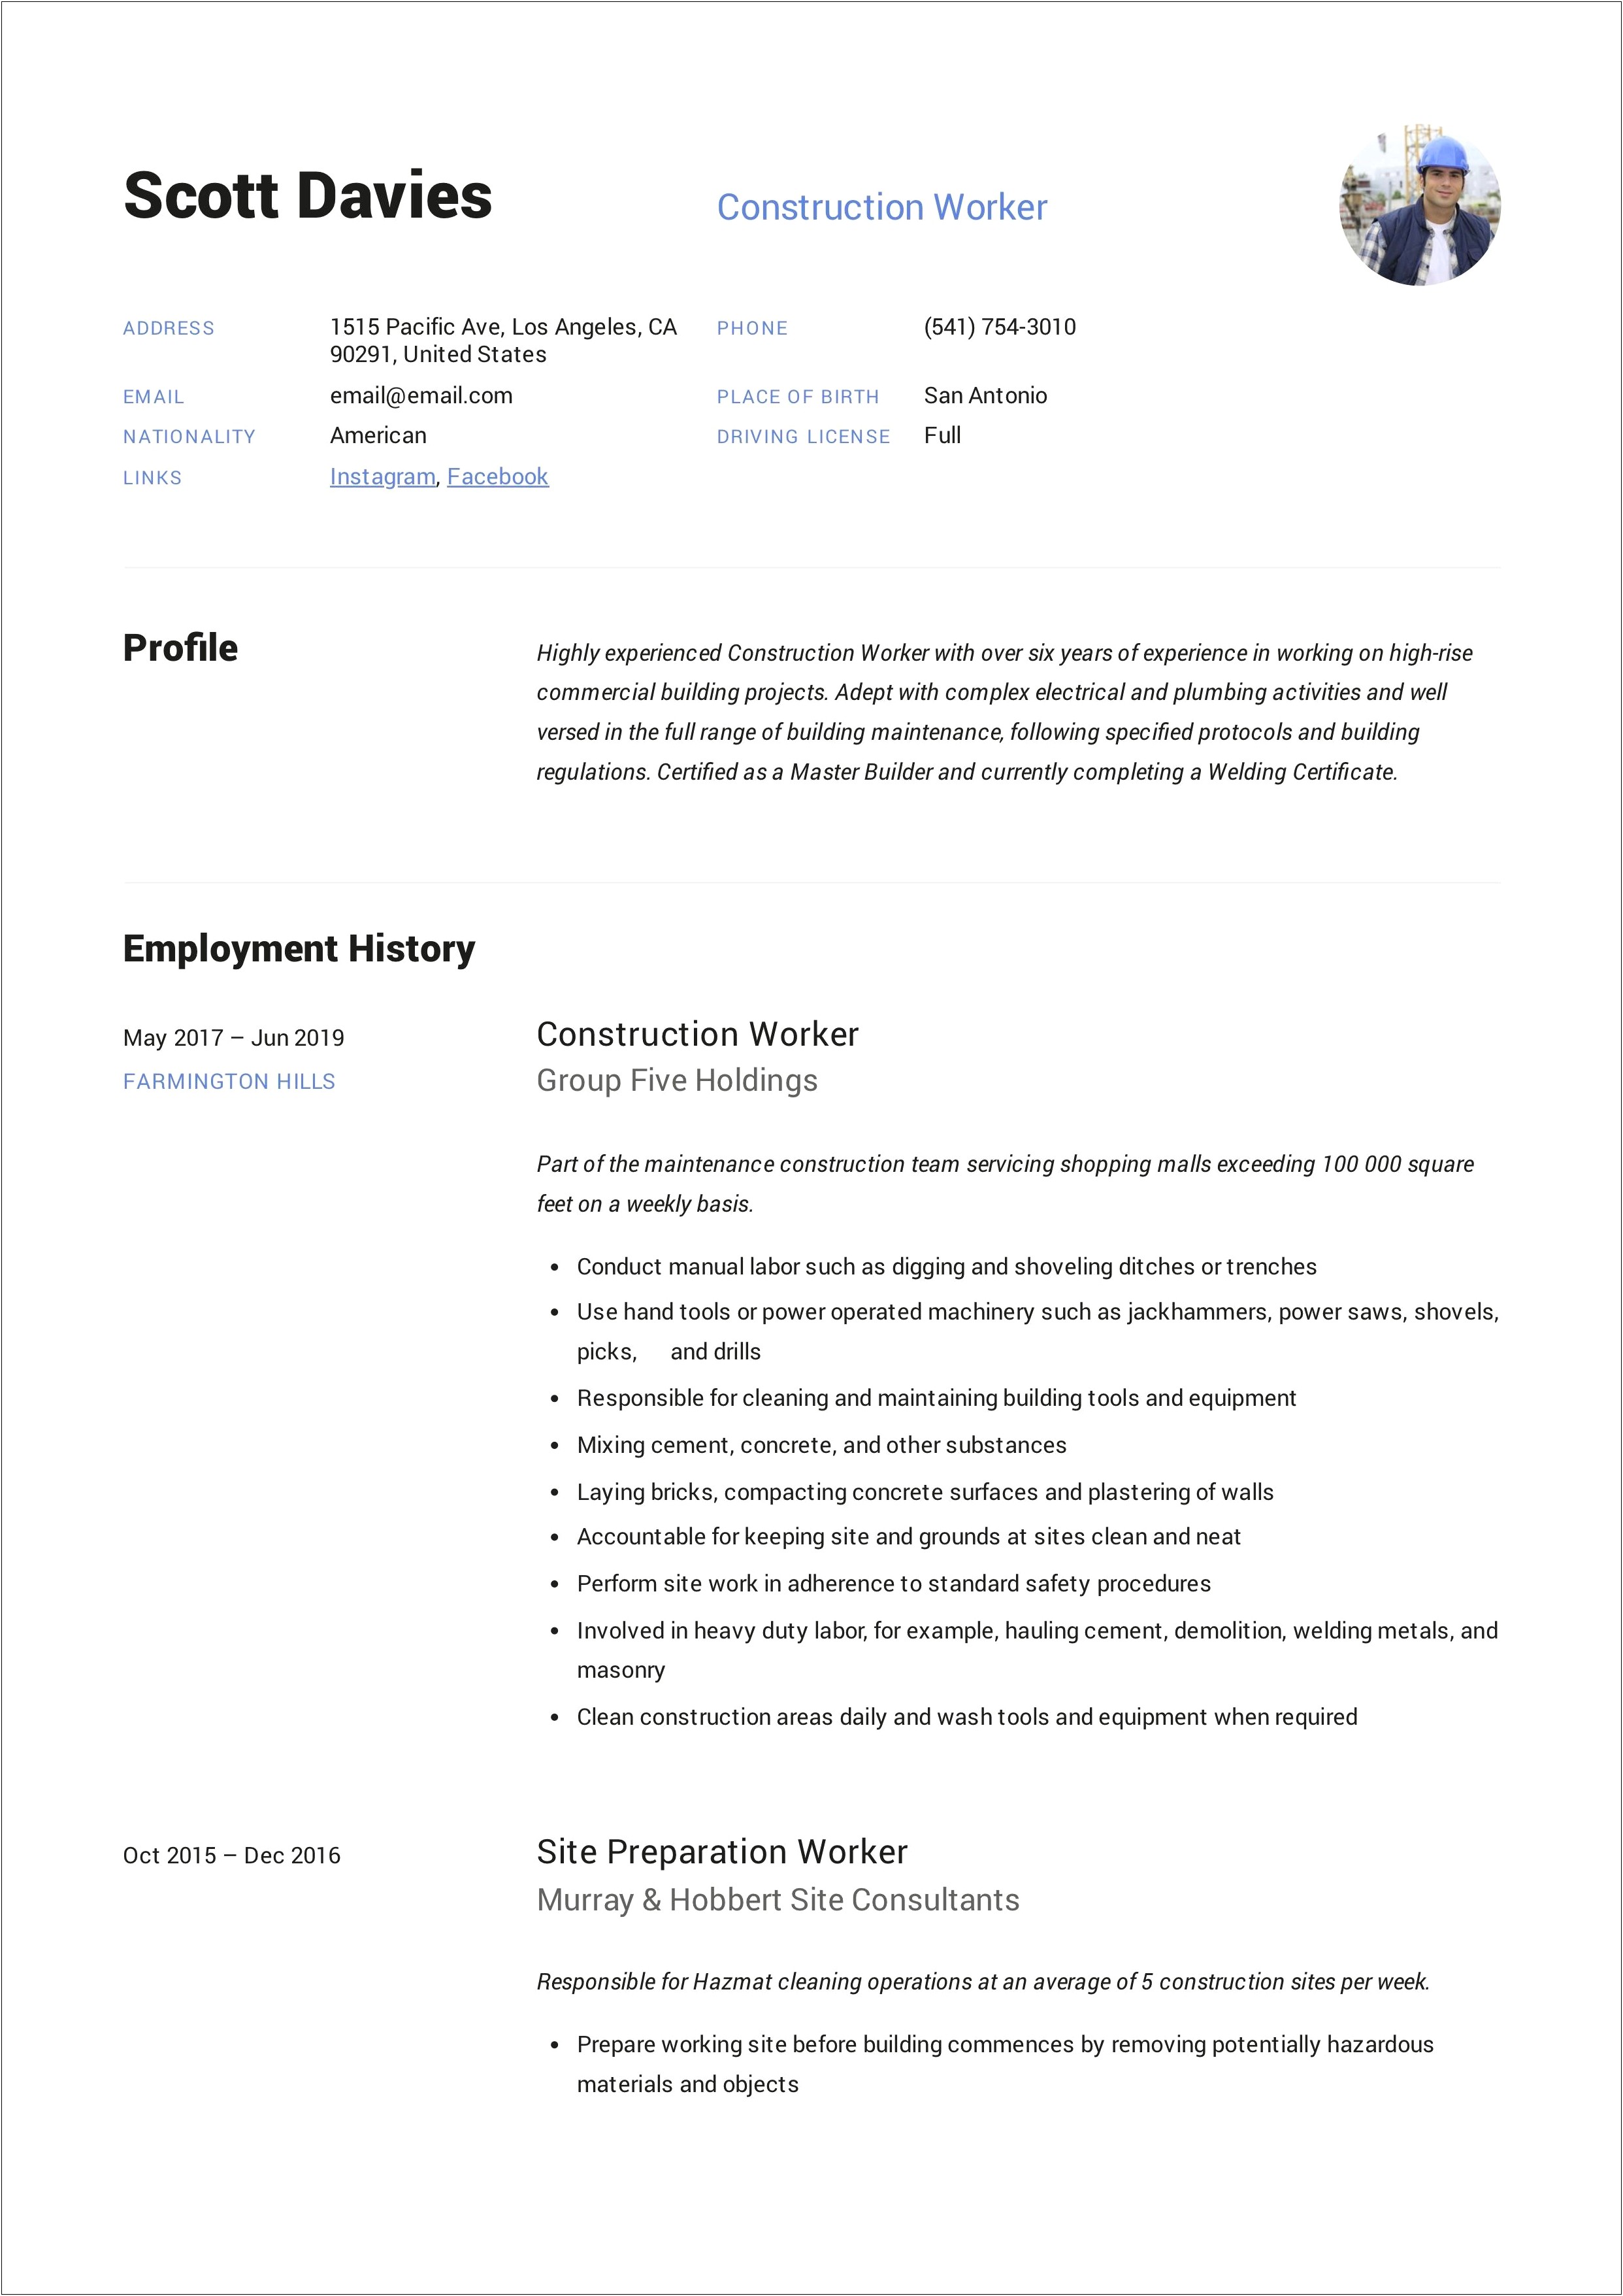 Construction Labourer Job Description For Resume